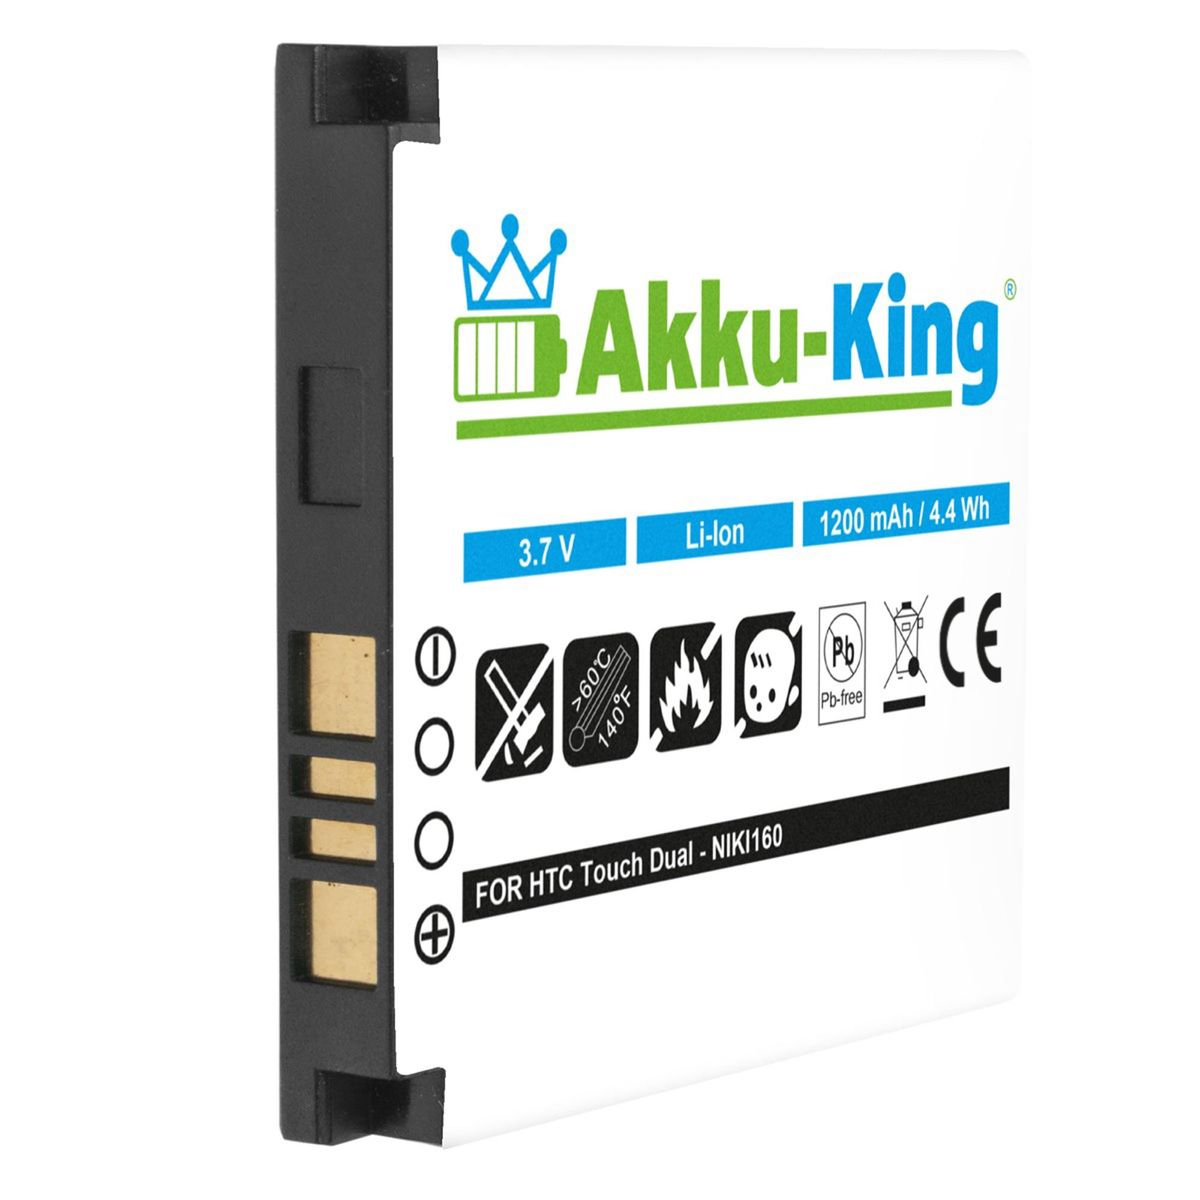 kompatibel HTC Handy-Akku, Akku S260 3.7 Li-Ion AKKU-KING Volt, mit 1200mAh BA